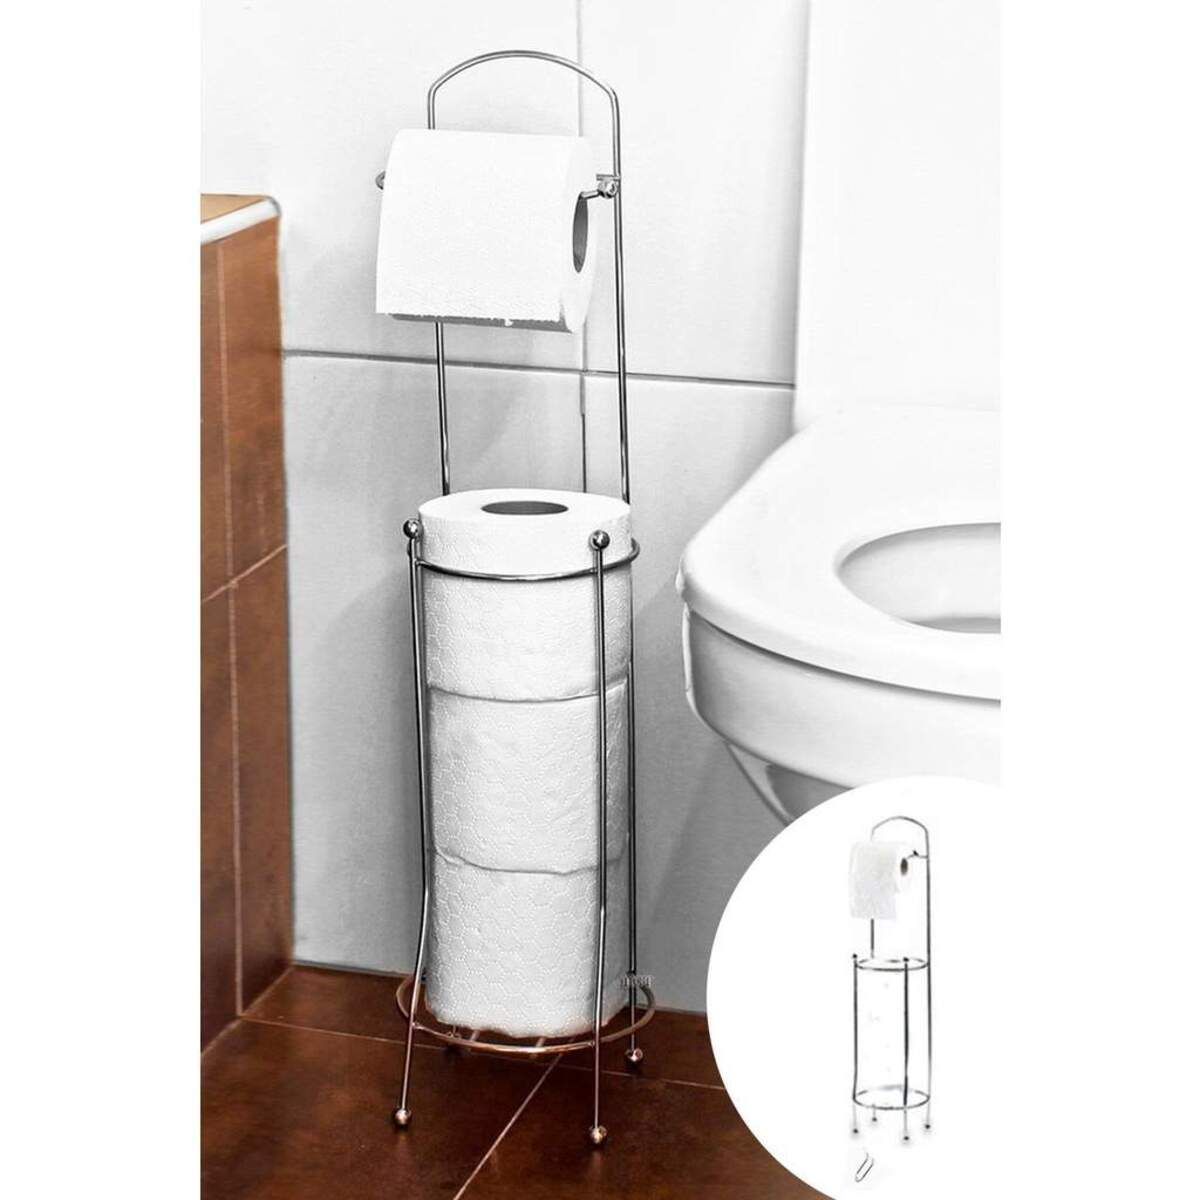 Arsimo Yedek Hazneli Wc Kağıtlık Yedekli Tuvalet Kagıtlığı